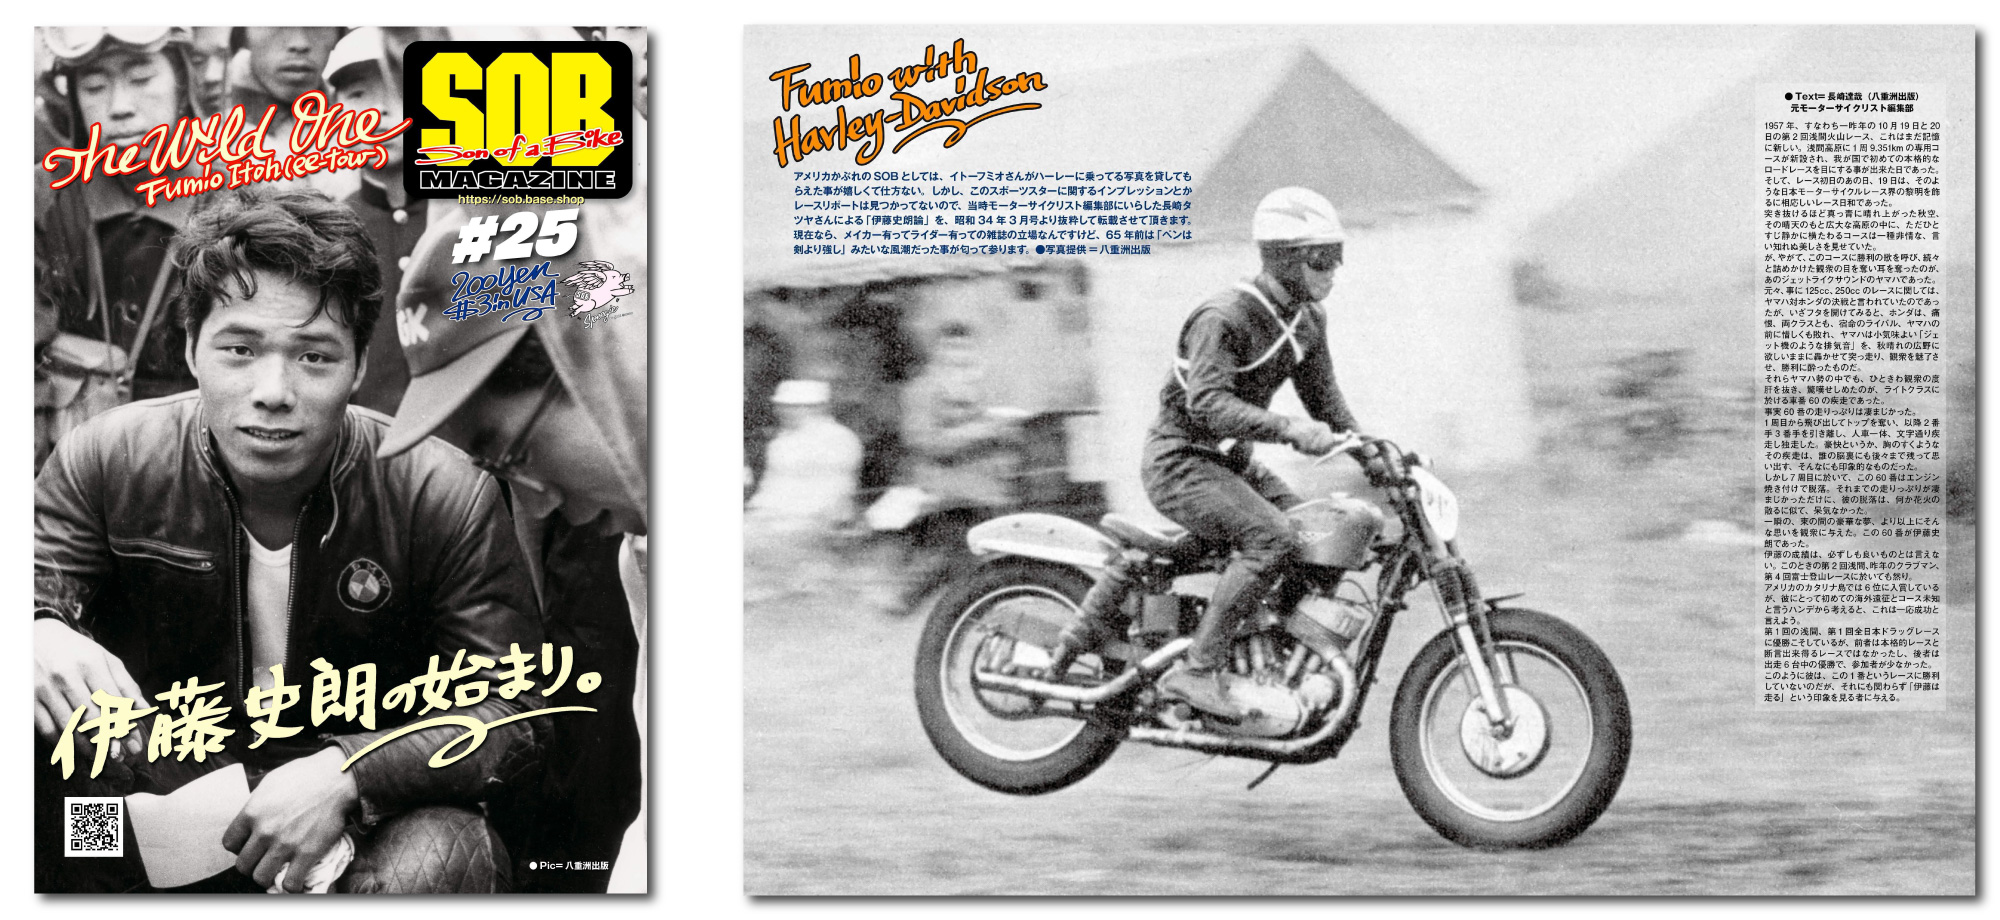 SOBマガジン #025　編集長 中尾省吾 16歳の若さで浅間火山レースに出場しデビュー・ウィンを果たし、世界GPでも活躍を見せた、伊藤 史朗選手の記事です。